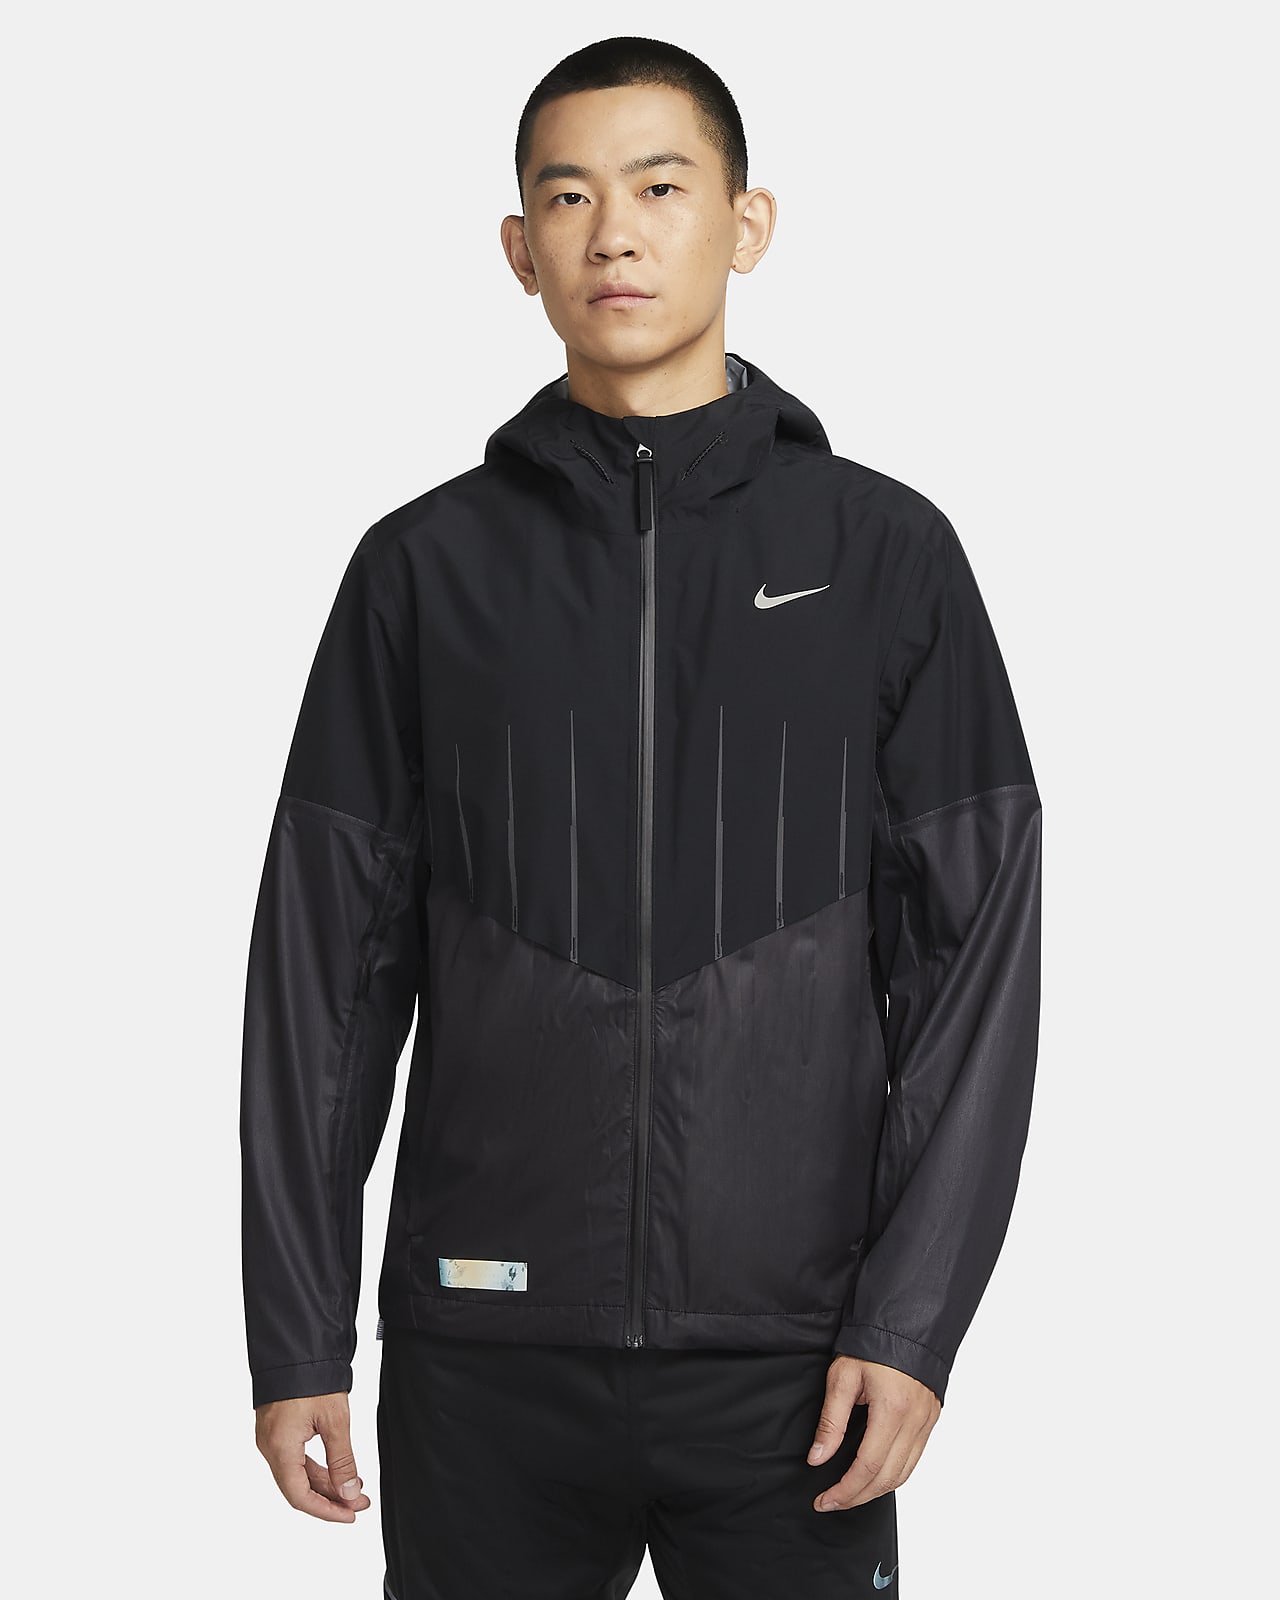 Nike Storm-FIT Windrunner Men's Running Jacket - Black